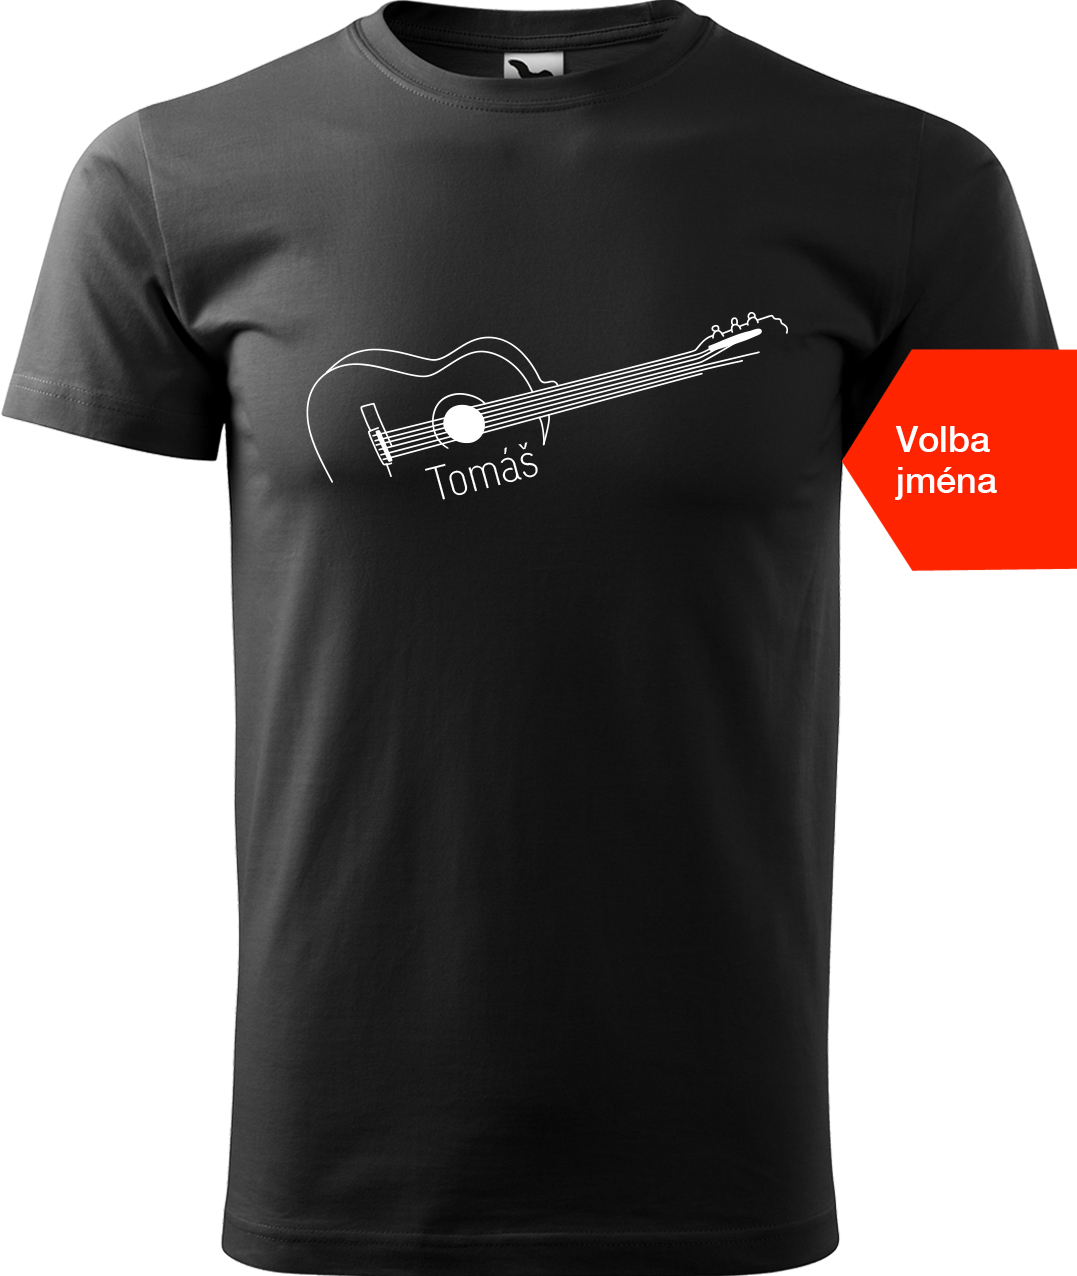 Pánské tričko s kytarou se jménem - Stylizovaná kytara Velikost: M, Barva: Černá (01), Střih: pánský